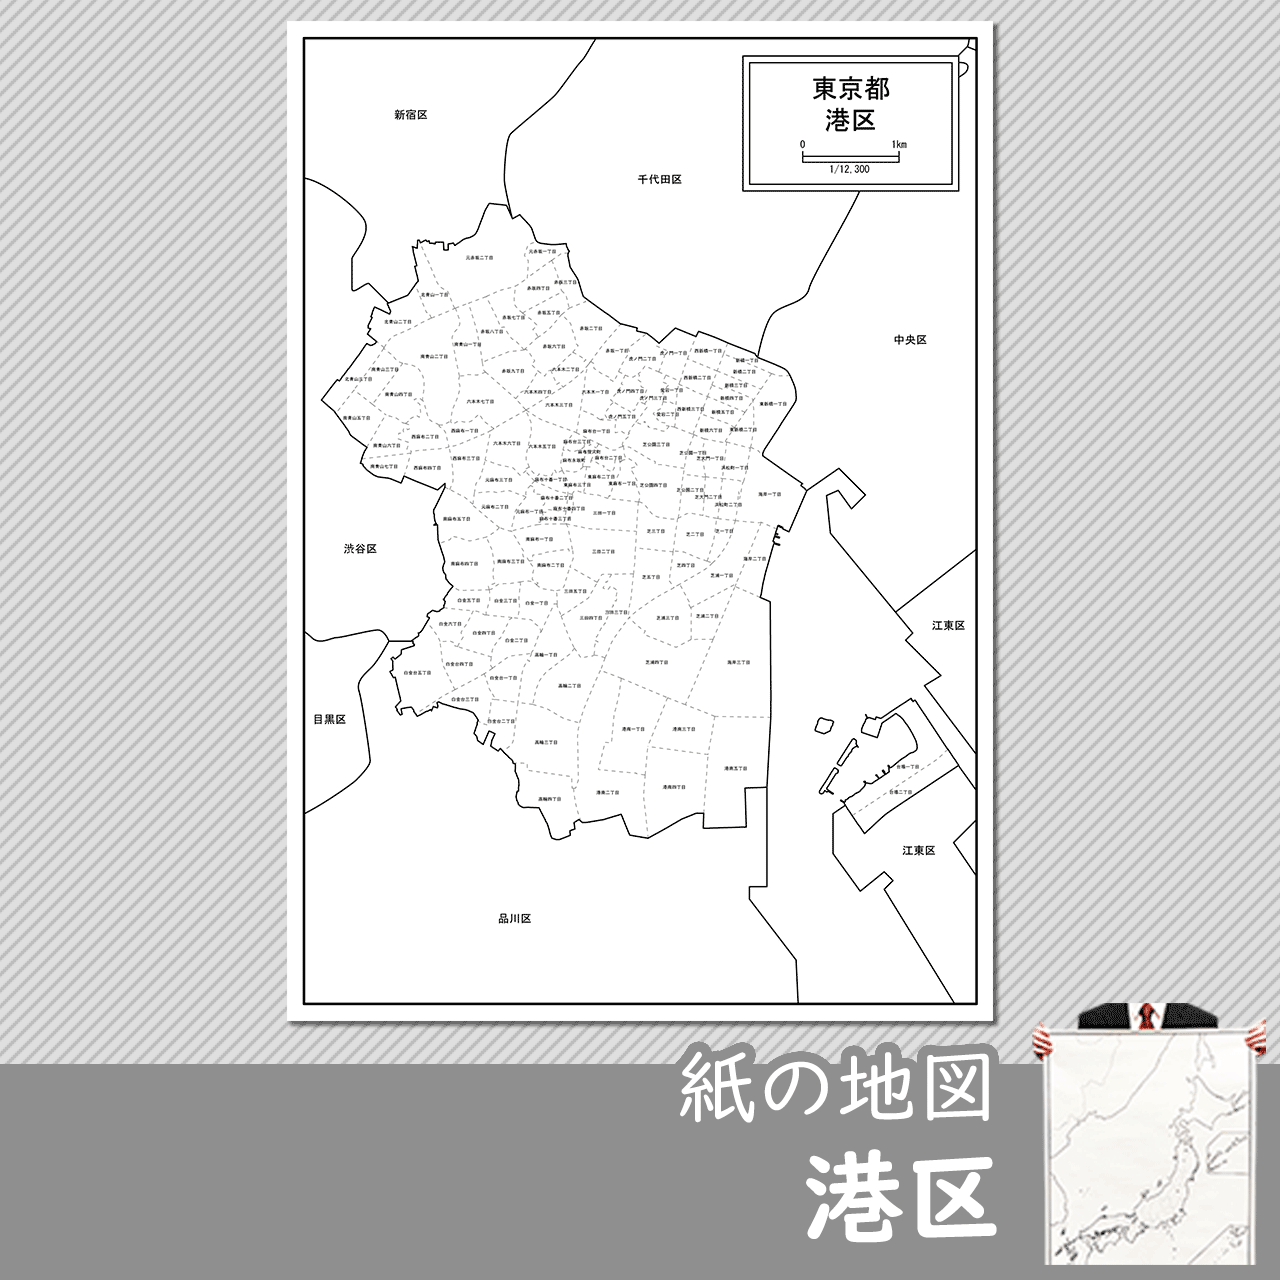 港区 東京都 の白地図 白地図専門店